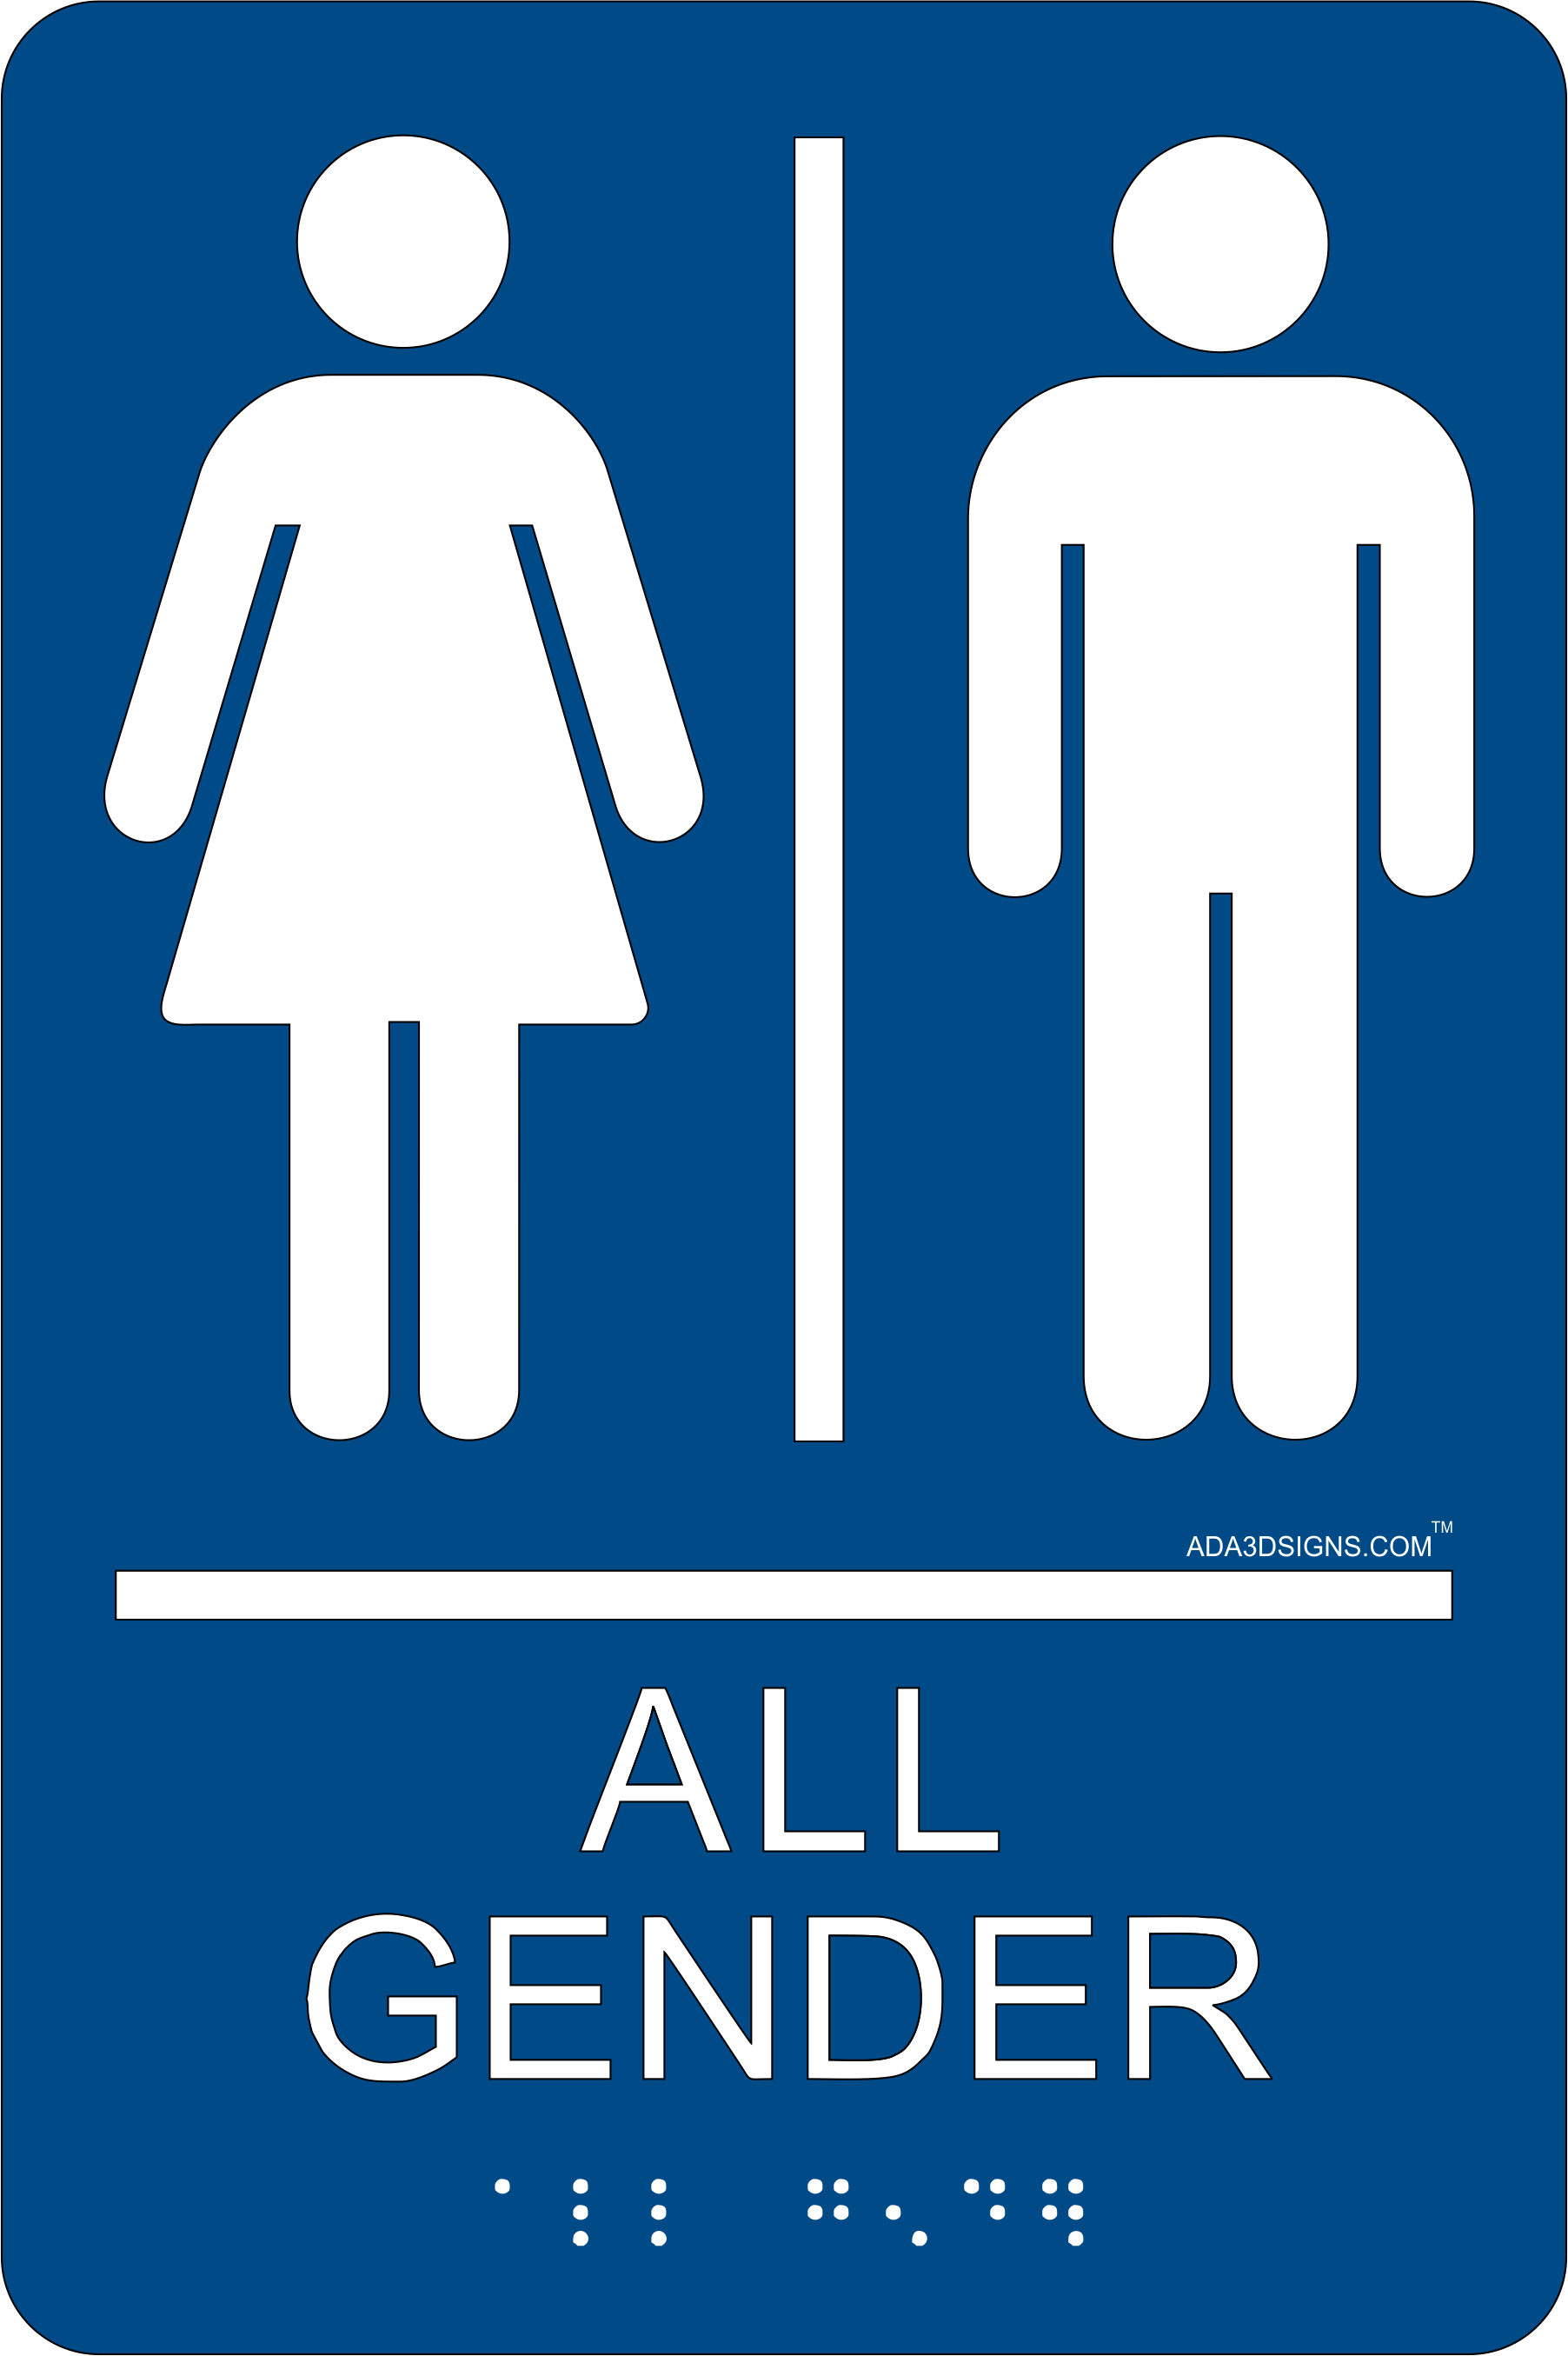 All gender restroom.